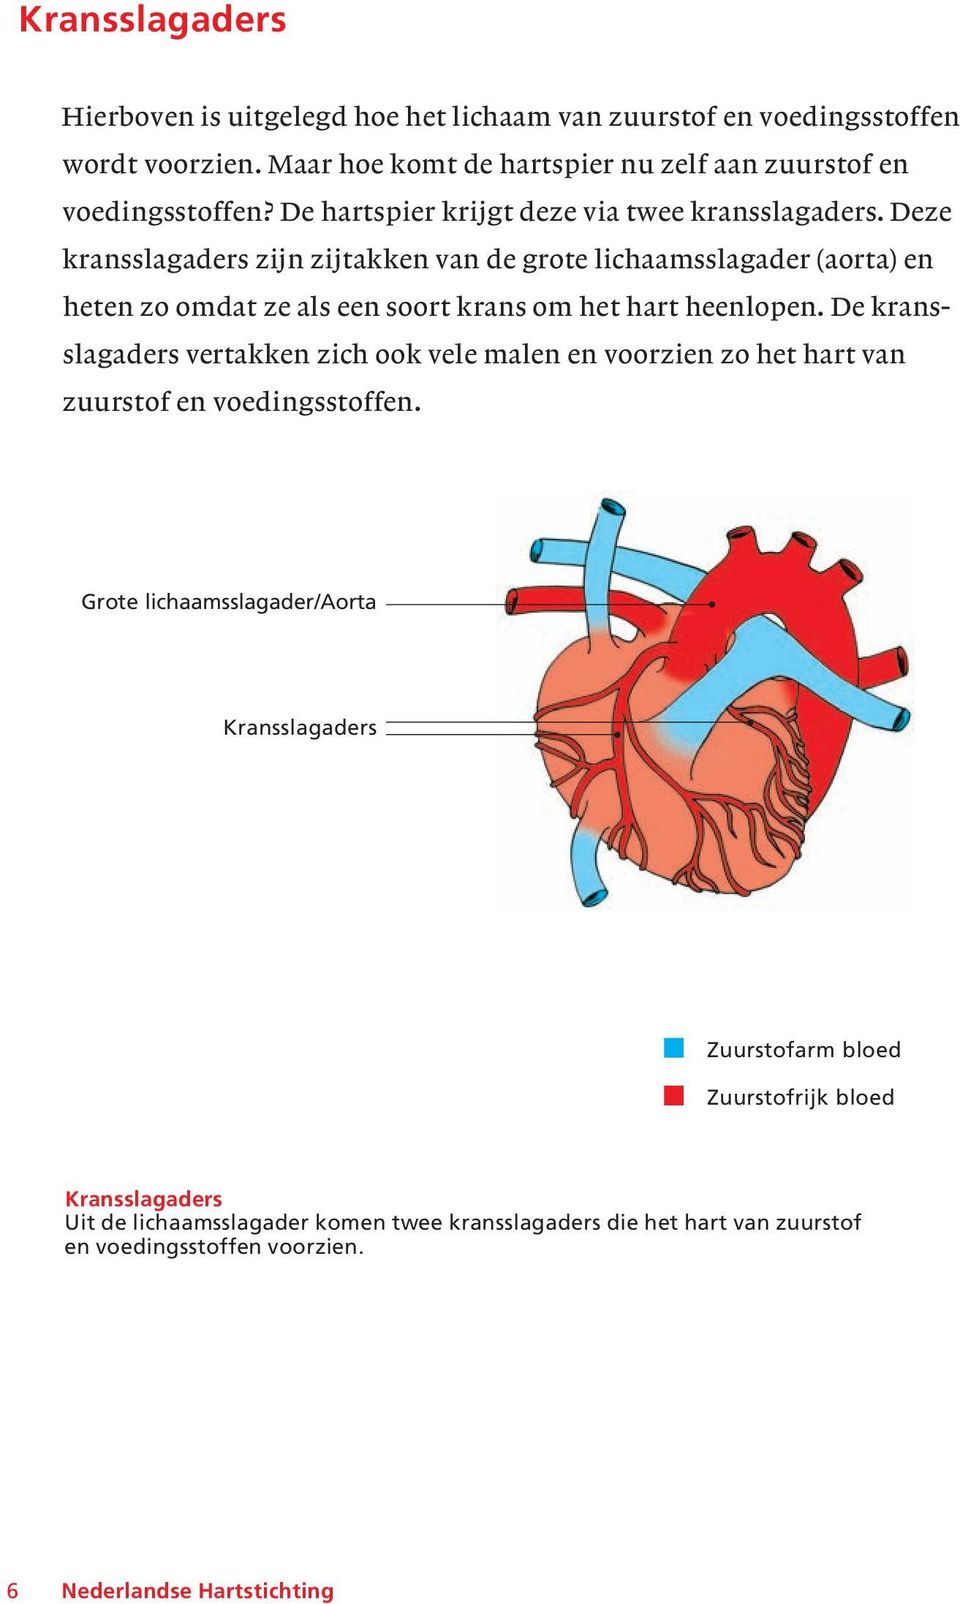 Deze kransslagaders zijn zijtakken van de grote lichaamsslagader (aorta) en heten zo omdat ze als een soort krans om het hart heenlopen.